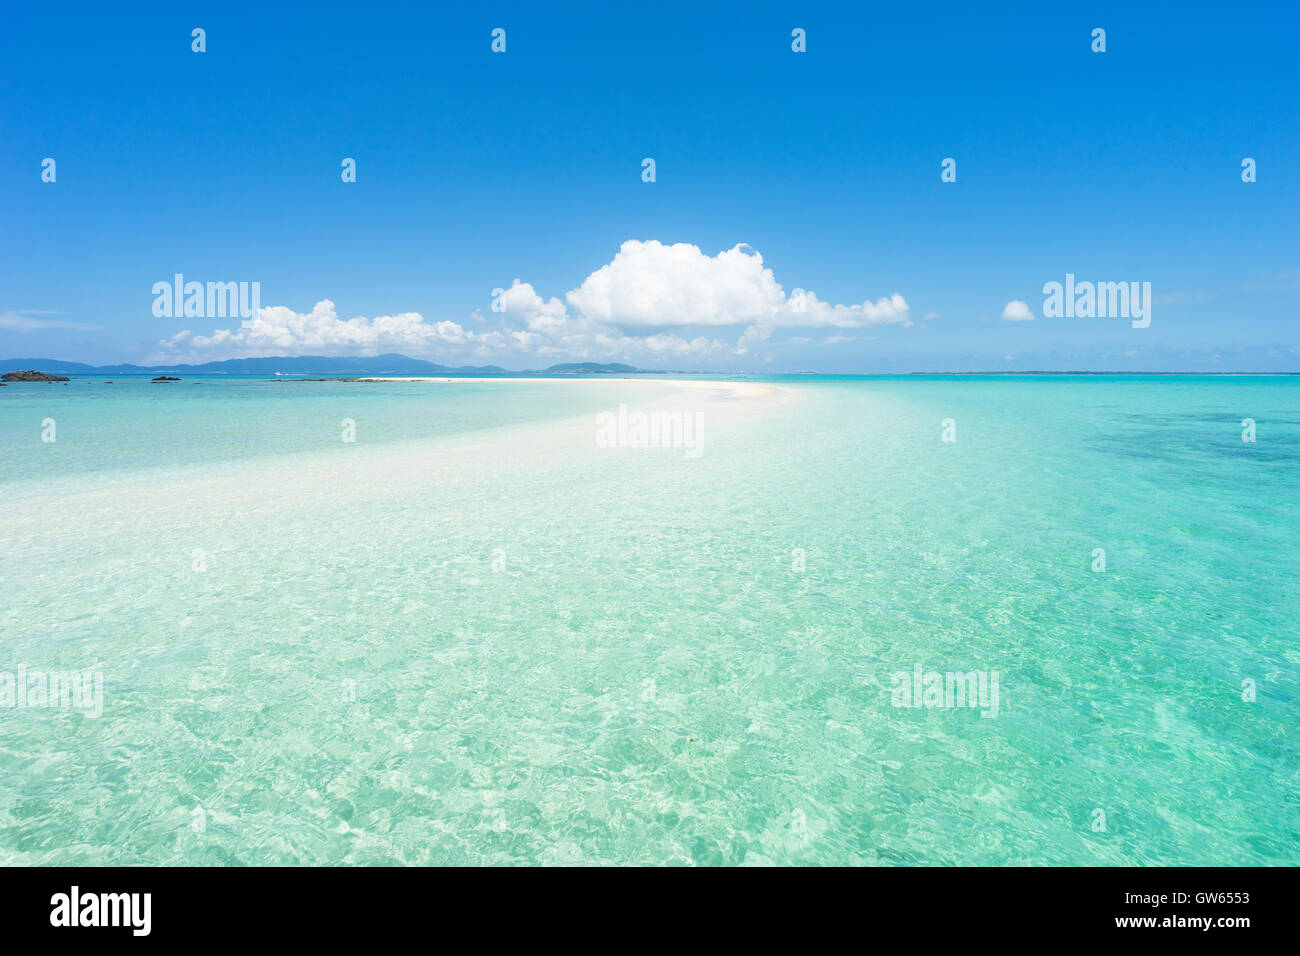 Tropical island paradise of Ishigaki Island, Yaeyama Island group, Okinawa, Japan Stock Photo